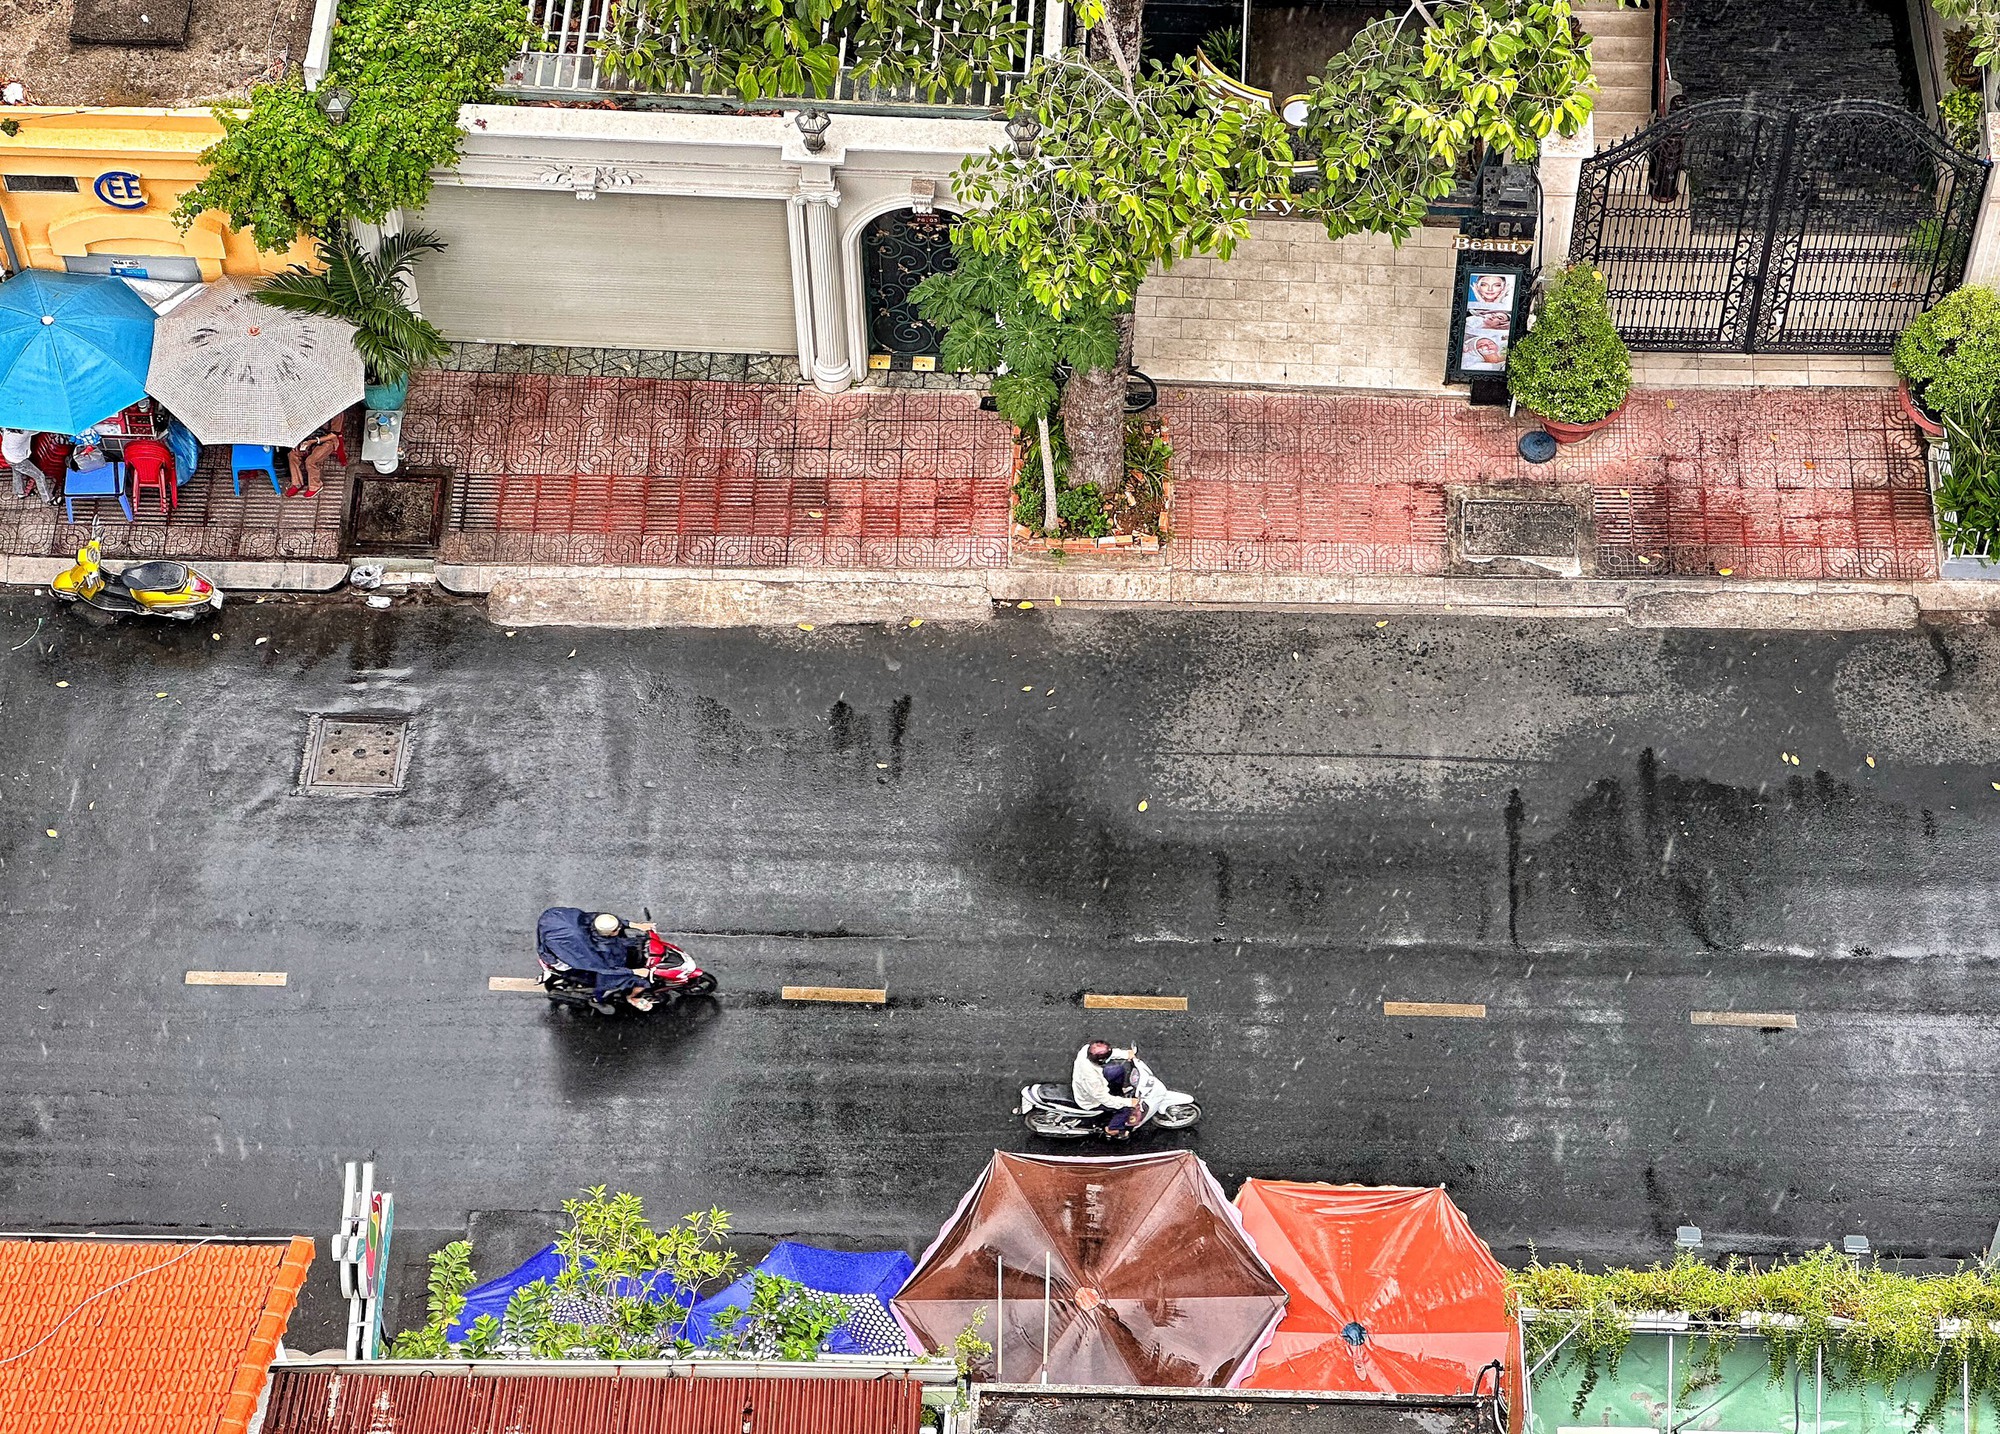 Sáng nay, trời TP.HCM xuất hiện mưa nhưng vẫn oi bức: 'Mong mưa lớn giải nhiệt' - Ảnh 1.